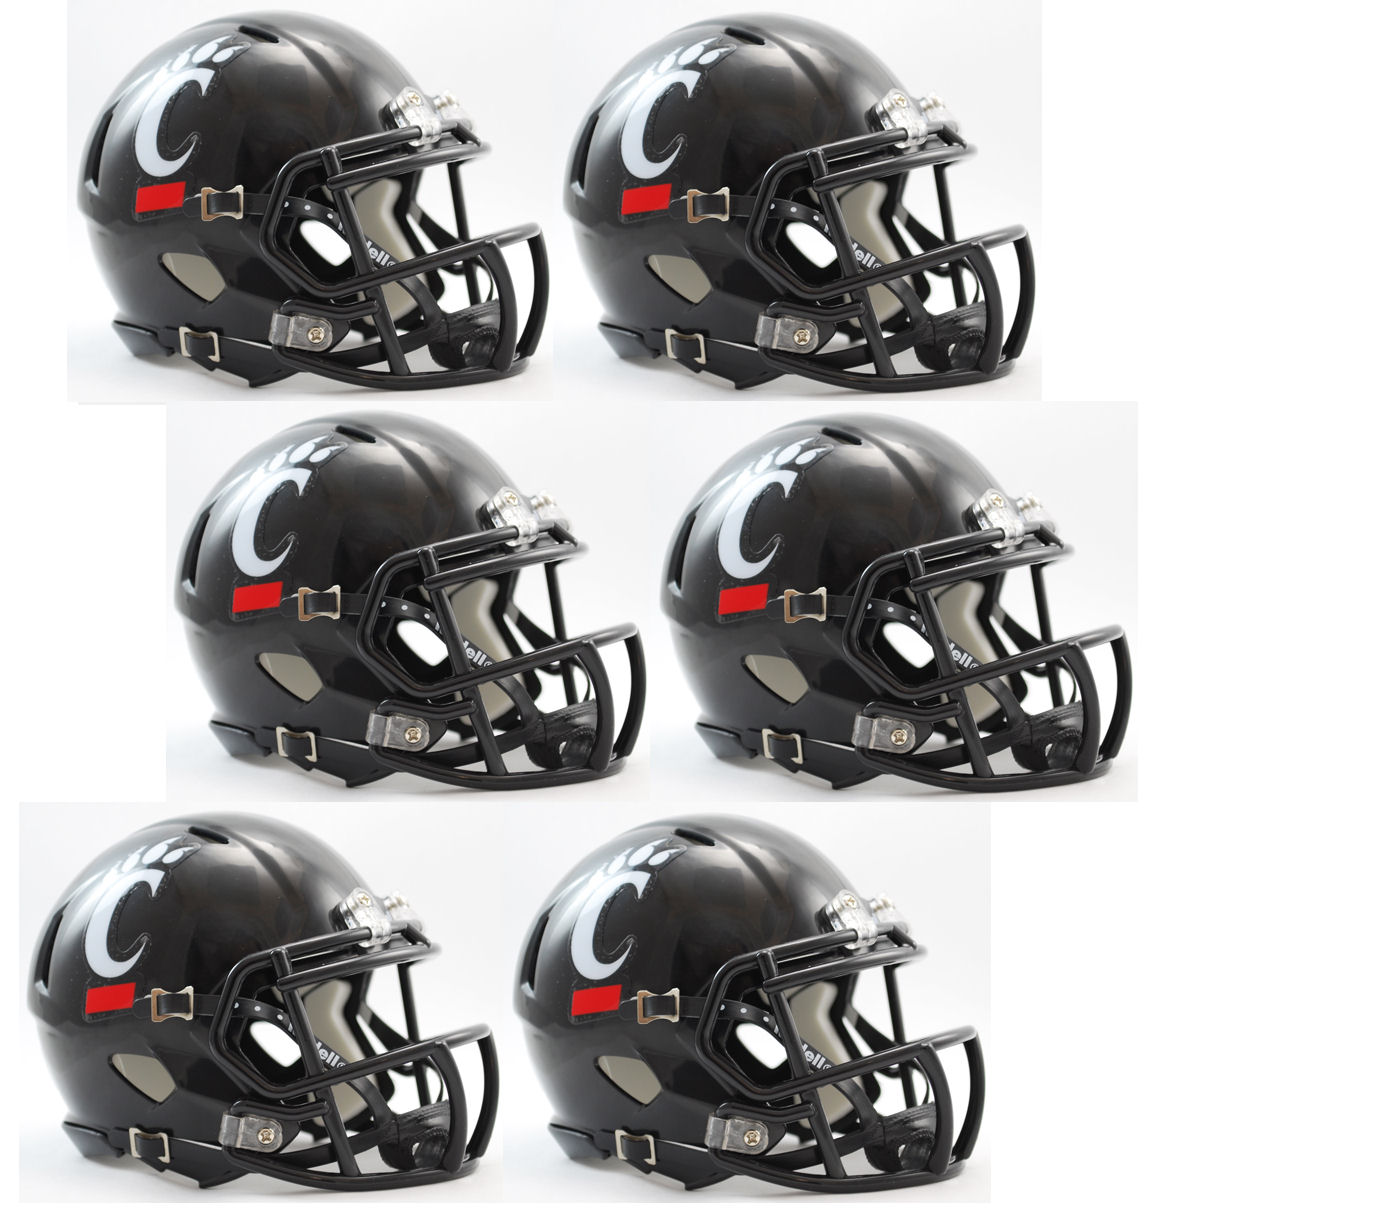 Cincinnati Bearcats NCAA Mini Speed Football Helmet 6 count